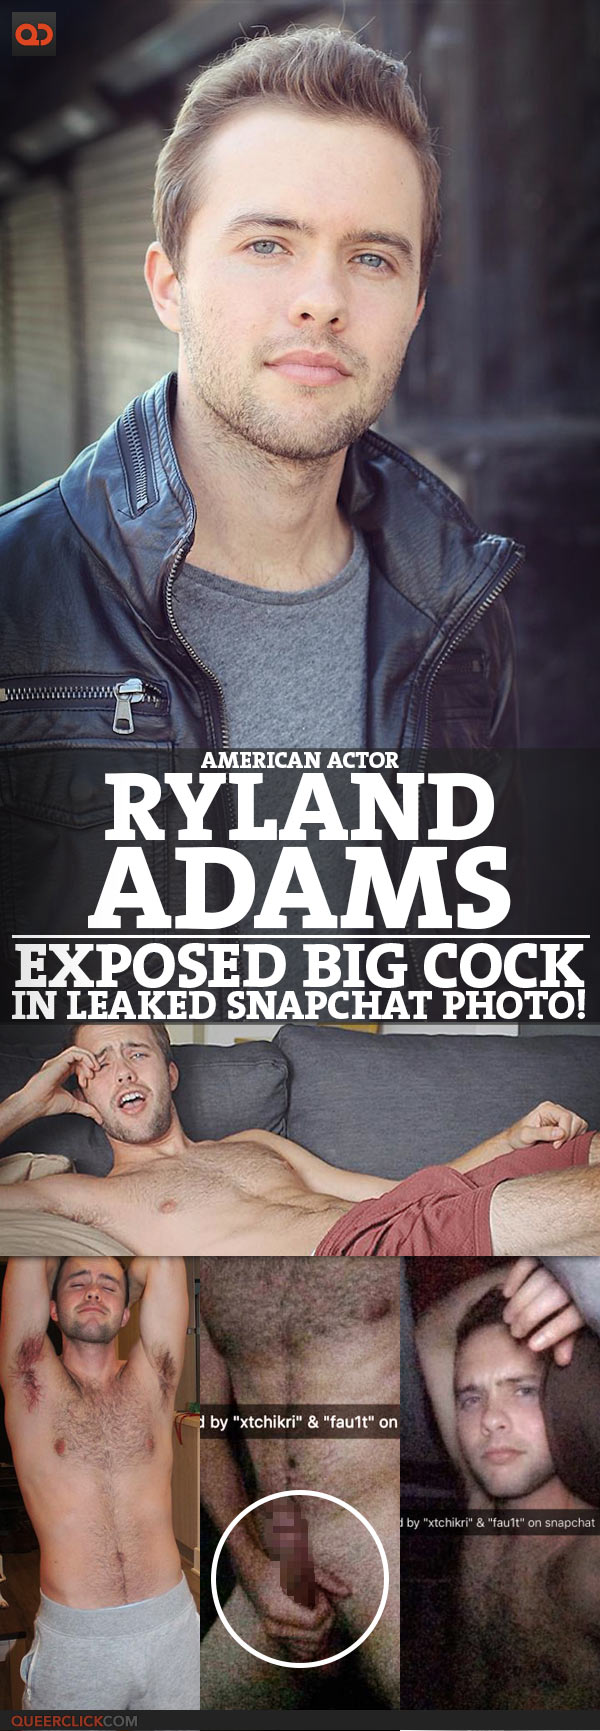 Ryland adams leaked nudes